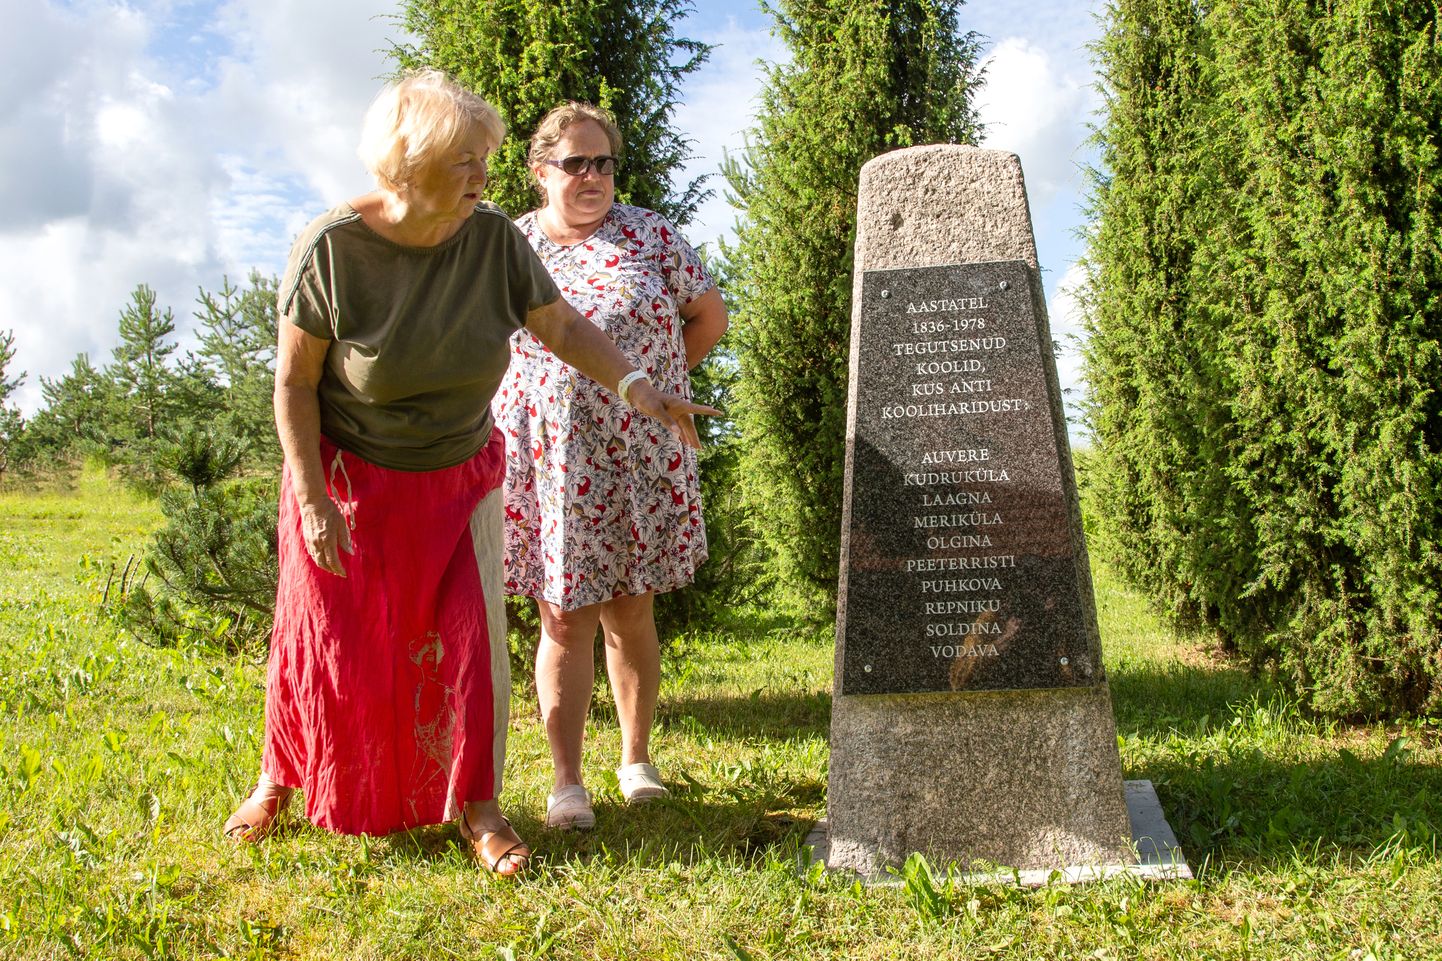 Eevi Paasmäe ja Uta Kroon-Assafrei ütlevad, et nimekiri aastatel 1836-1978 piirkonnas tegutsenud koolidest on tegelikult isegi pikem, kui tahvlile kirja sai. Näiteks Vaivara kooli mälestuskivi on kunagise kooli asukohas.